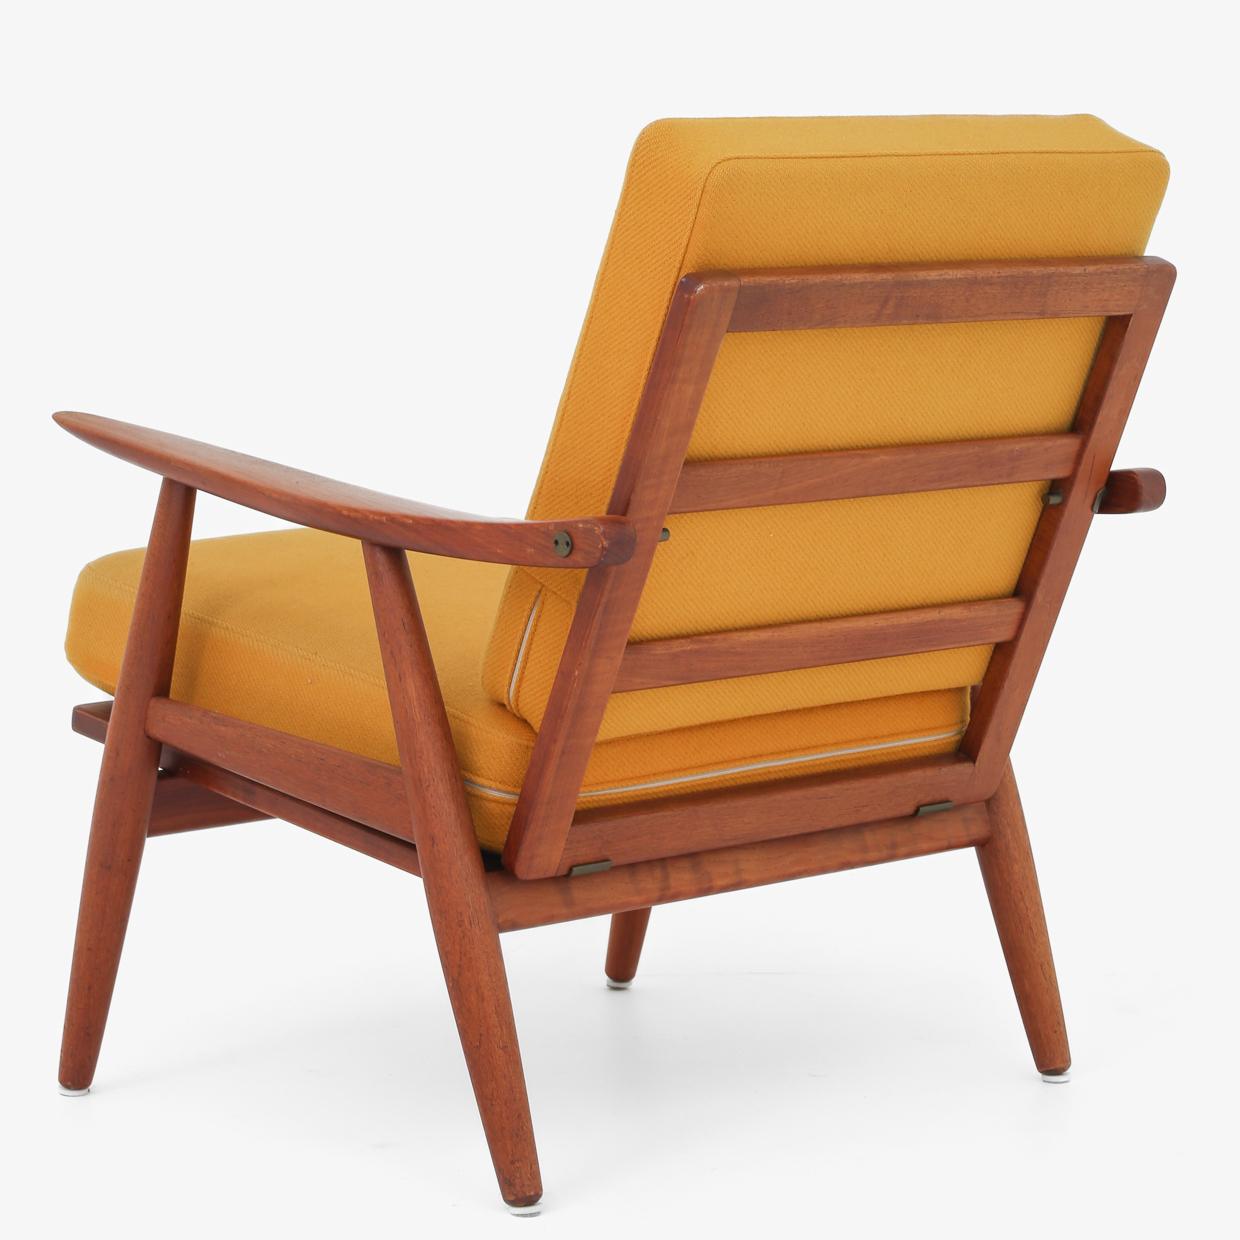 GE 270 - Easy chair in teak with cushions in yellow wool. Hans J. Wegner / GETAMA.